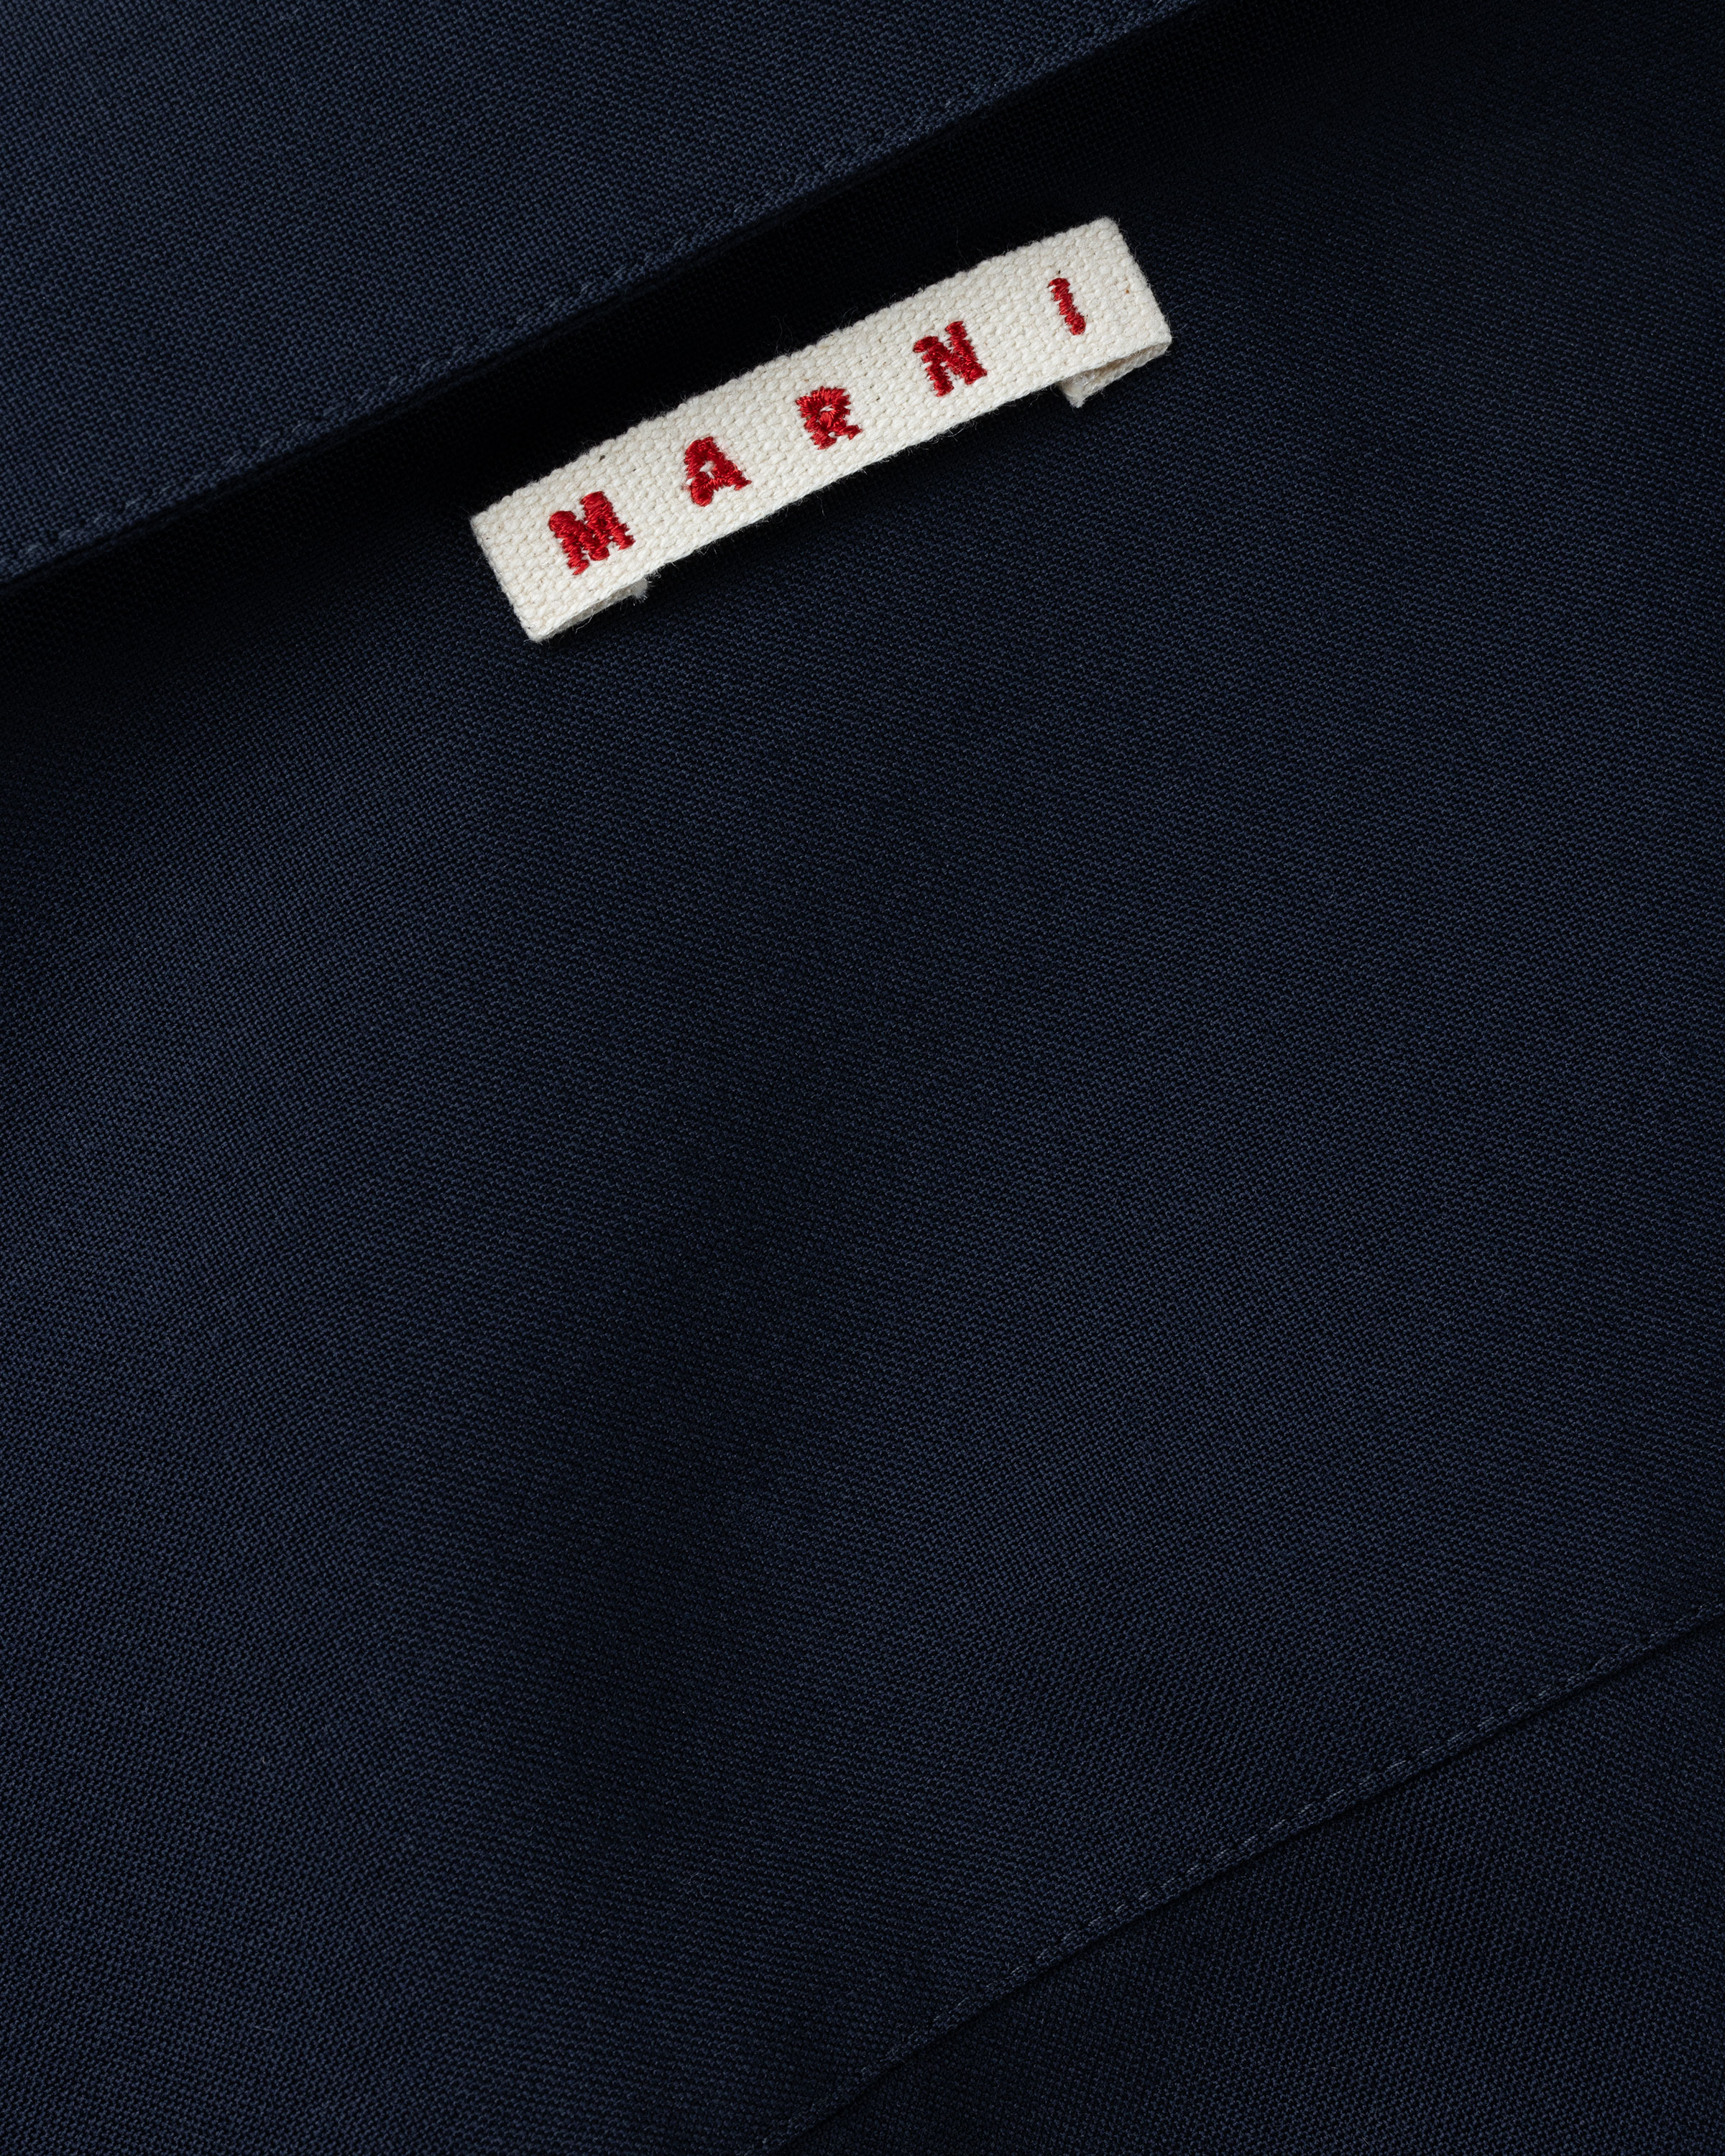 Marni - Bowling Shirt Navy - Clothing - Blue - Image 7